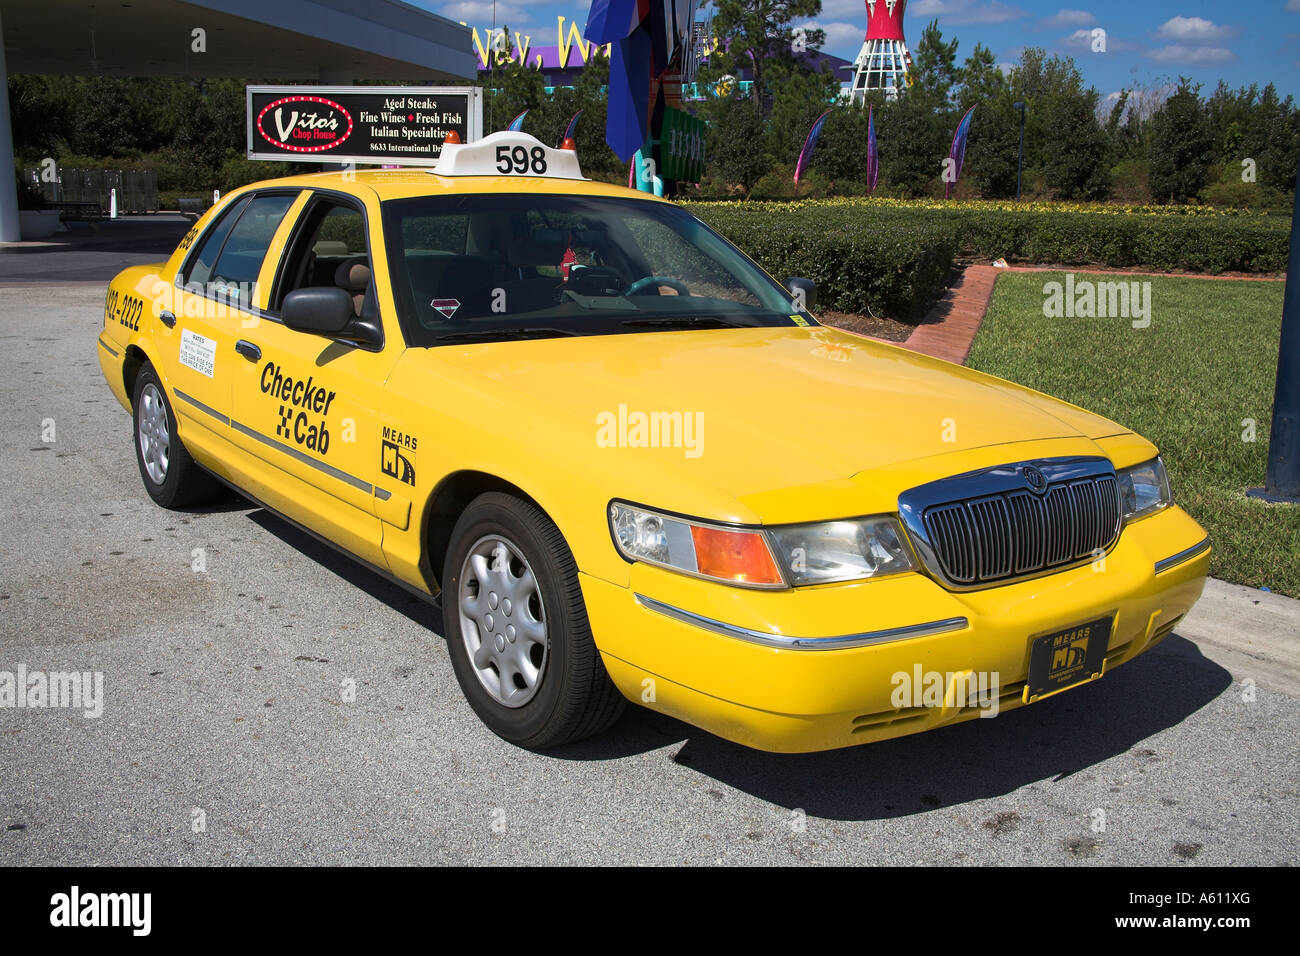 Yellow taxi, Orlando, Florida, USA Stock Photo